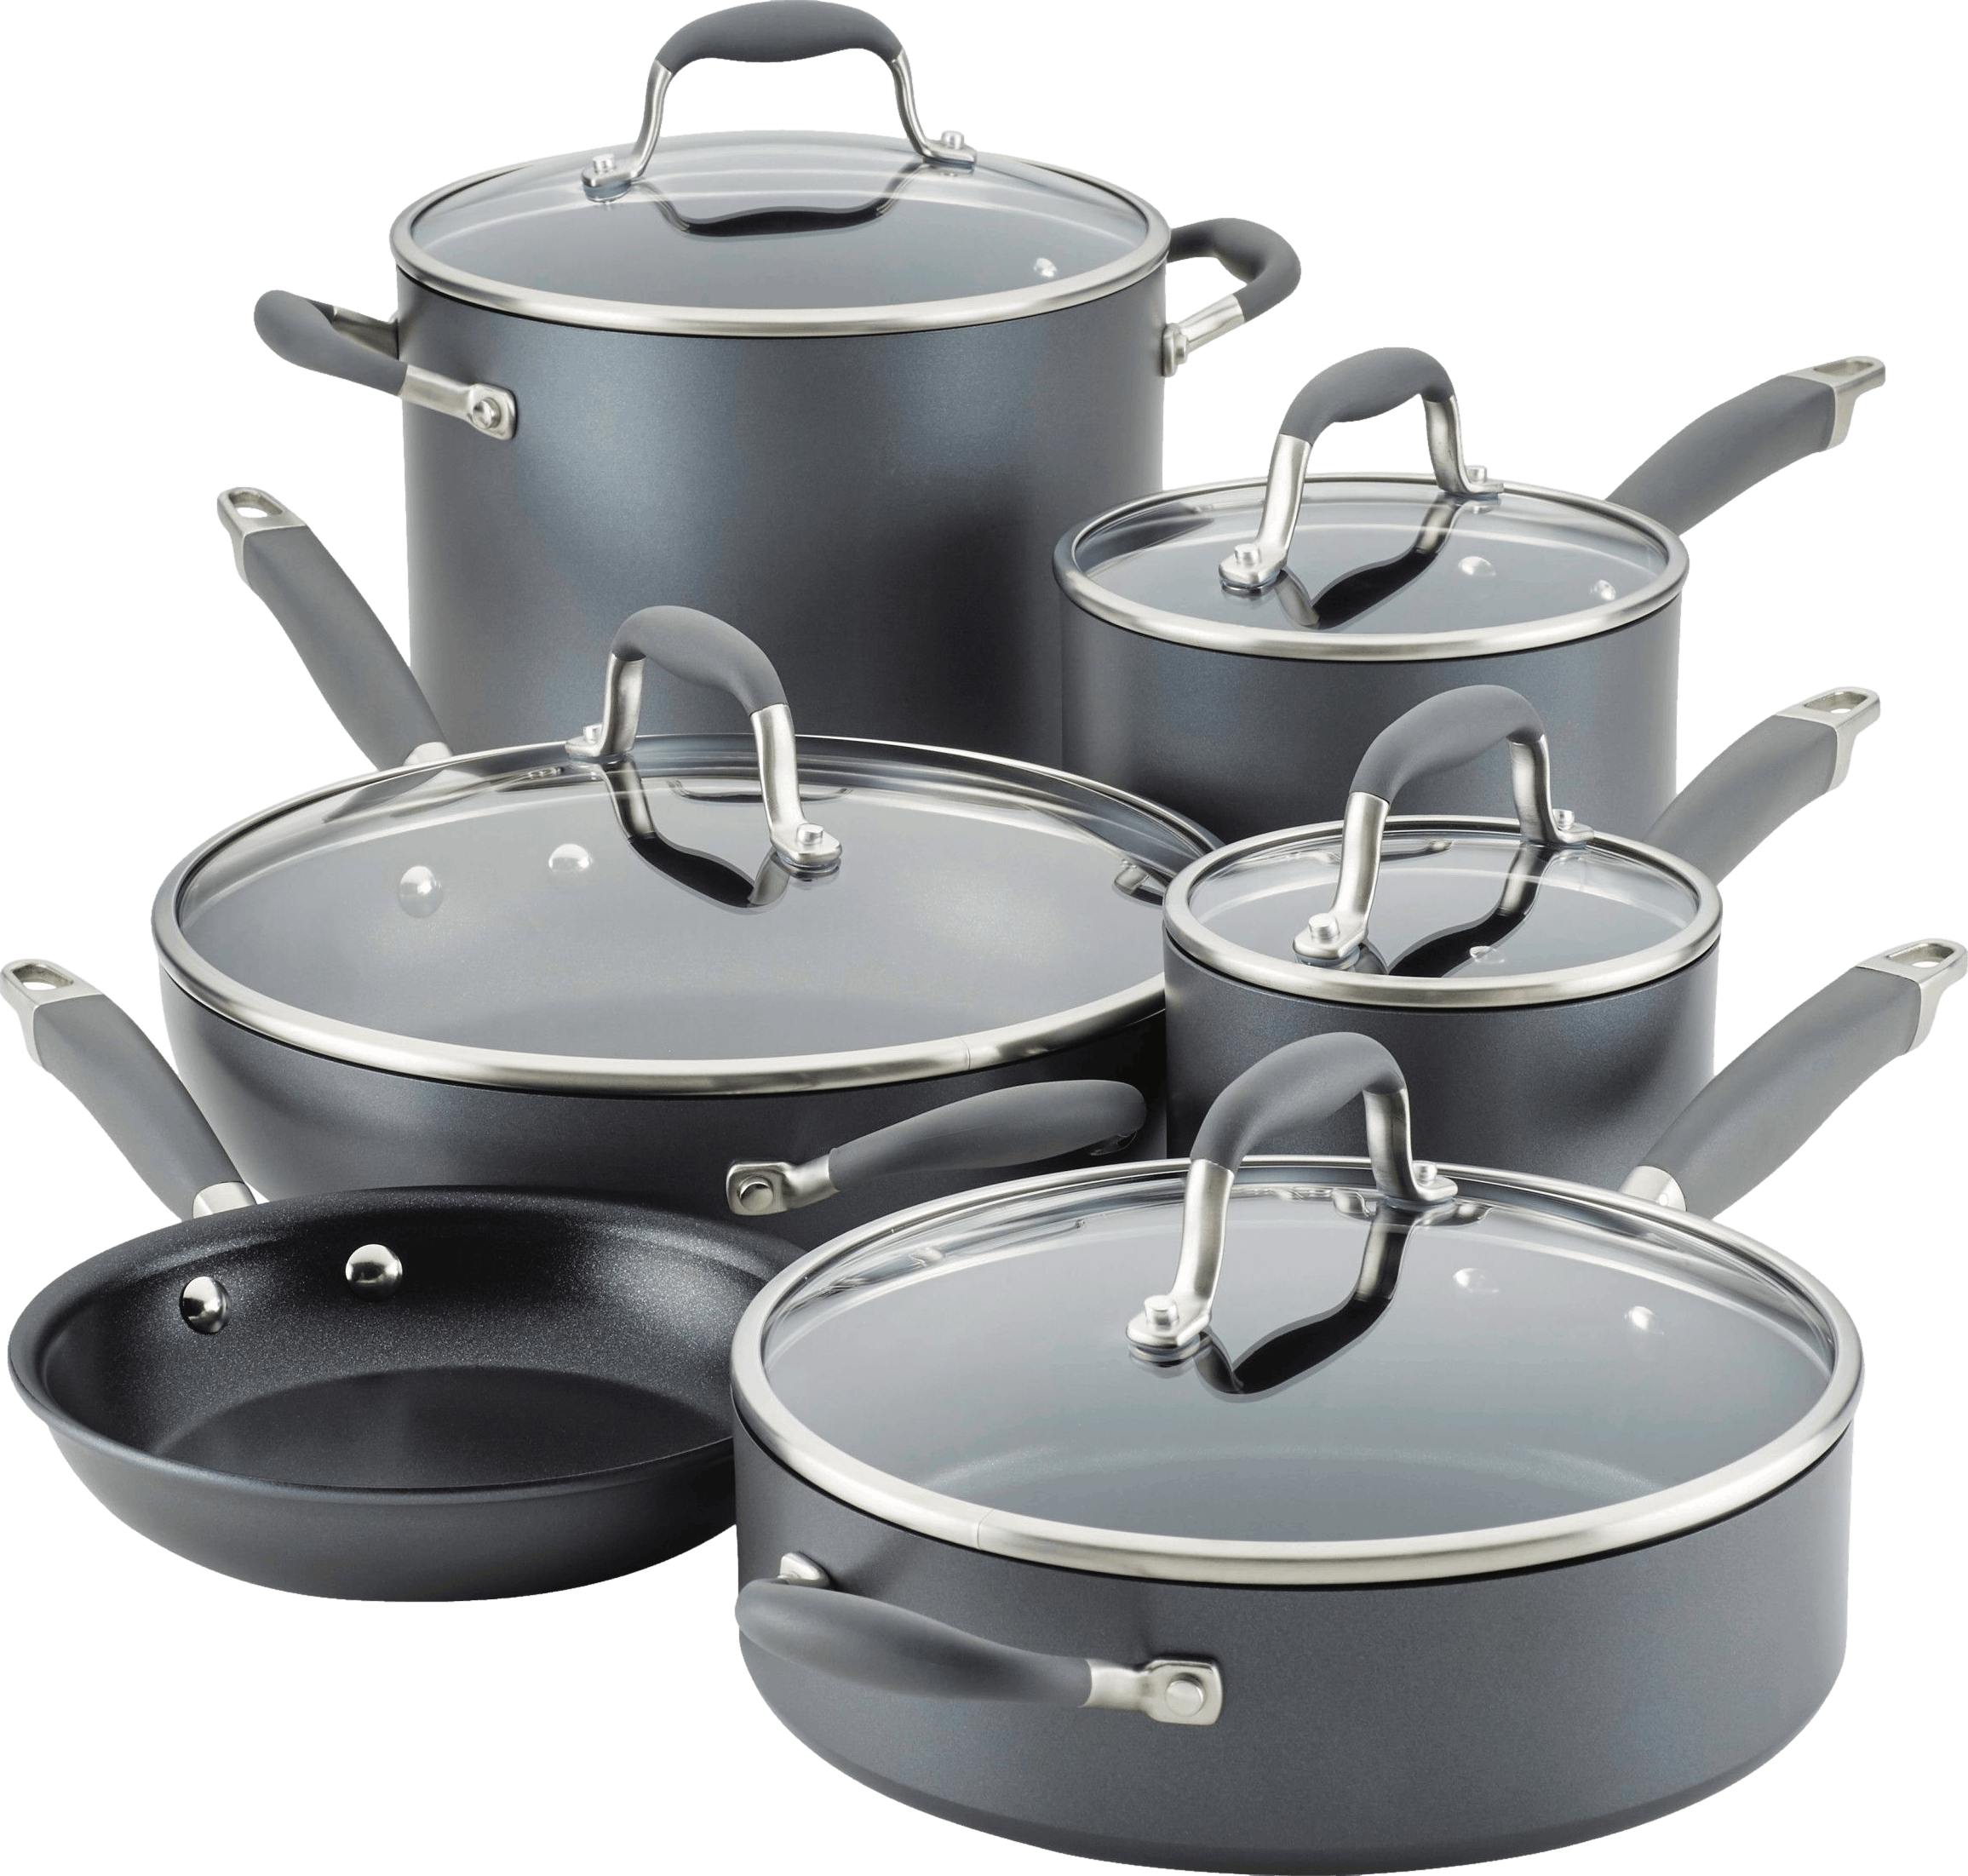 Anolon Achieve Hard Anodized Nonstick Cookware Pots and Pans Set